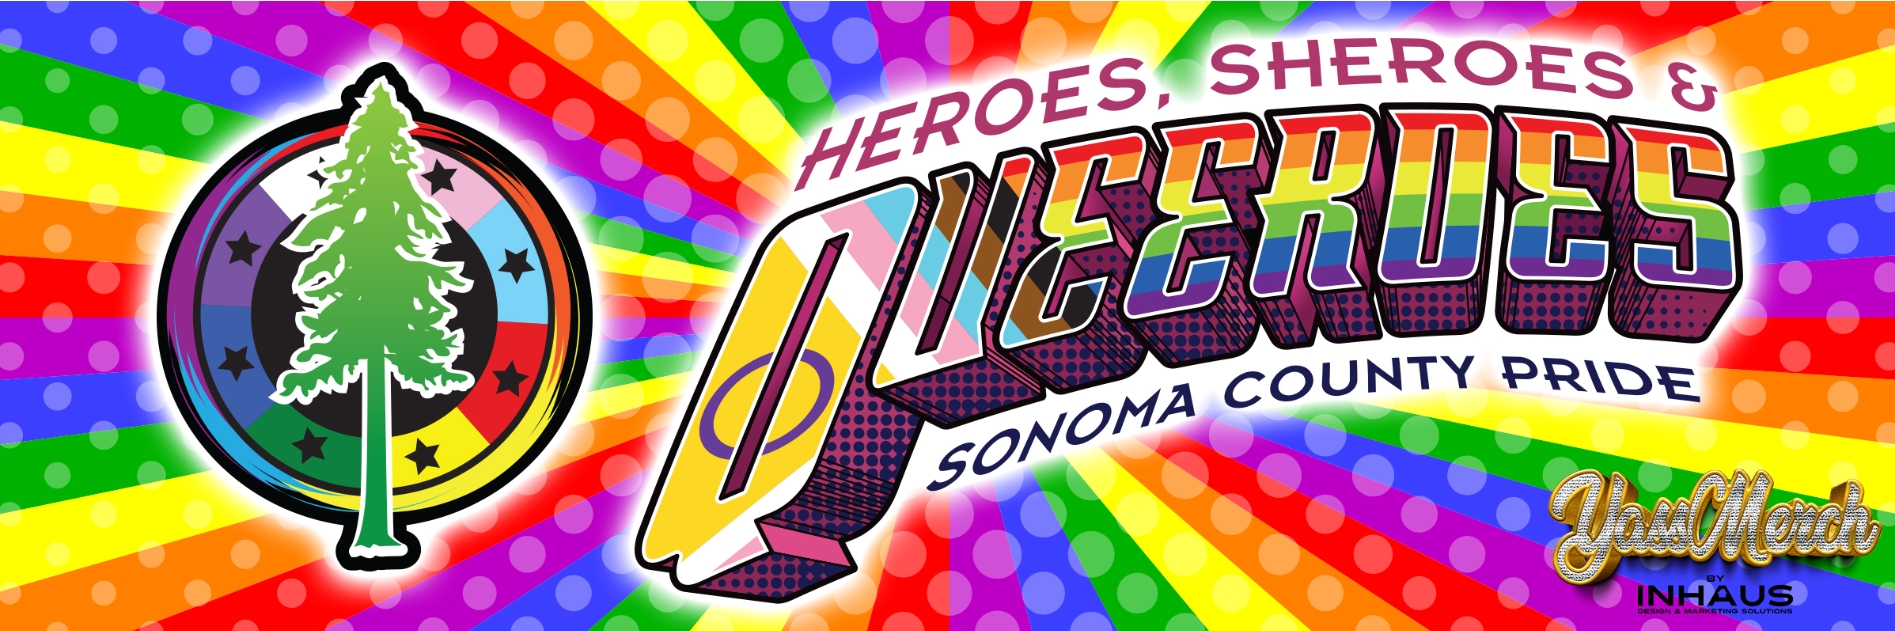 Sonoma County Pride theme